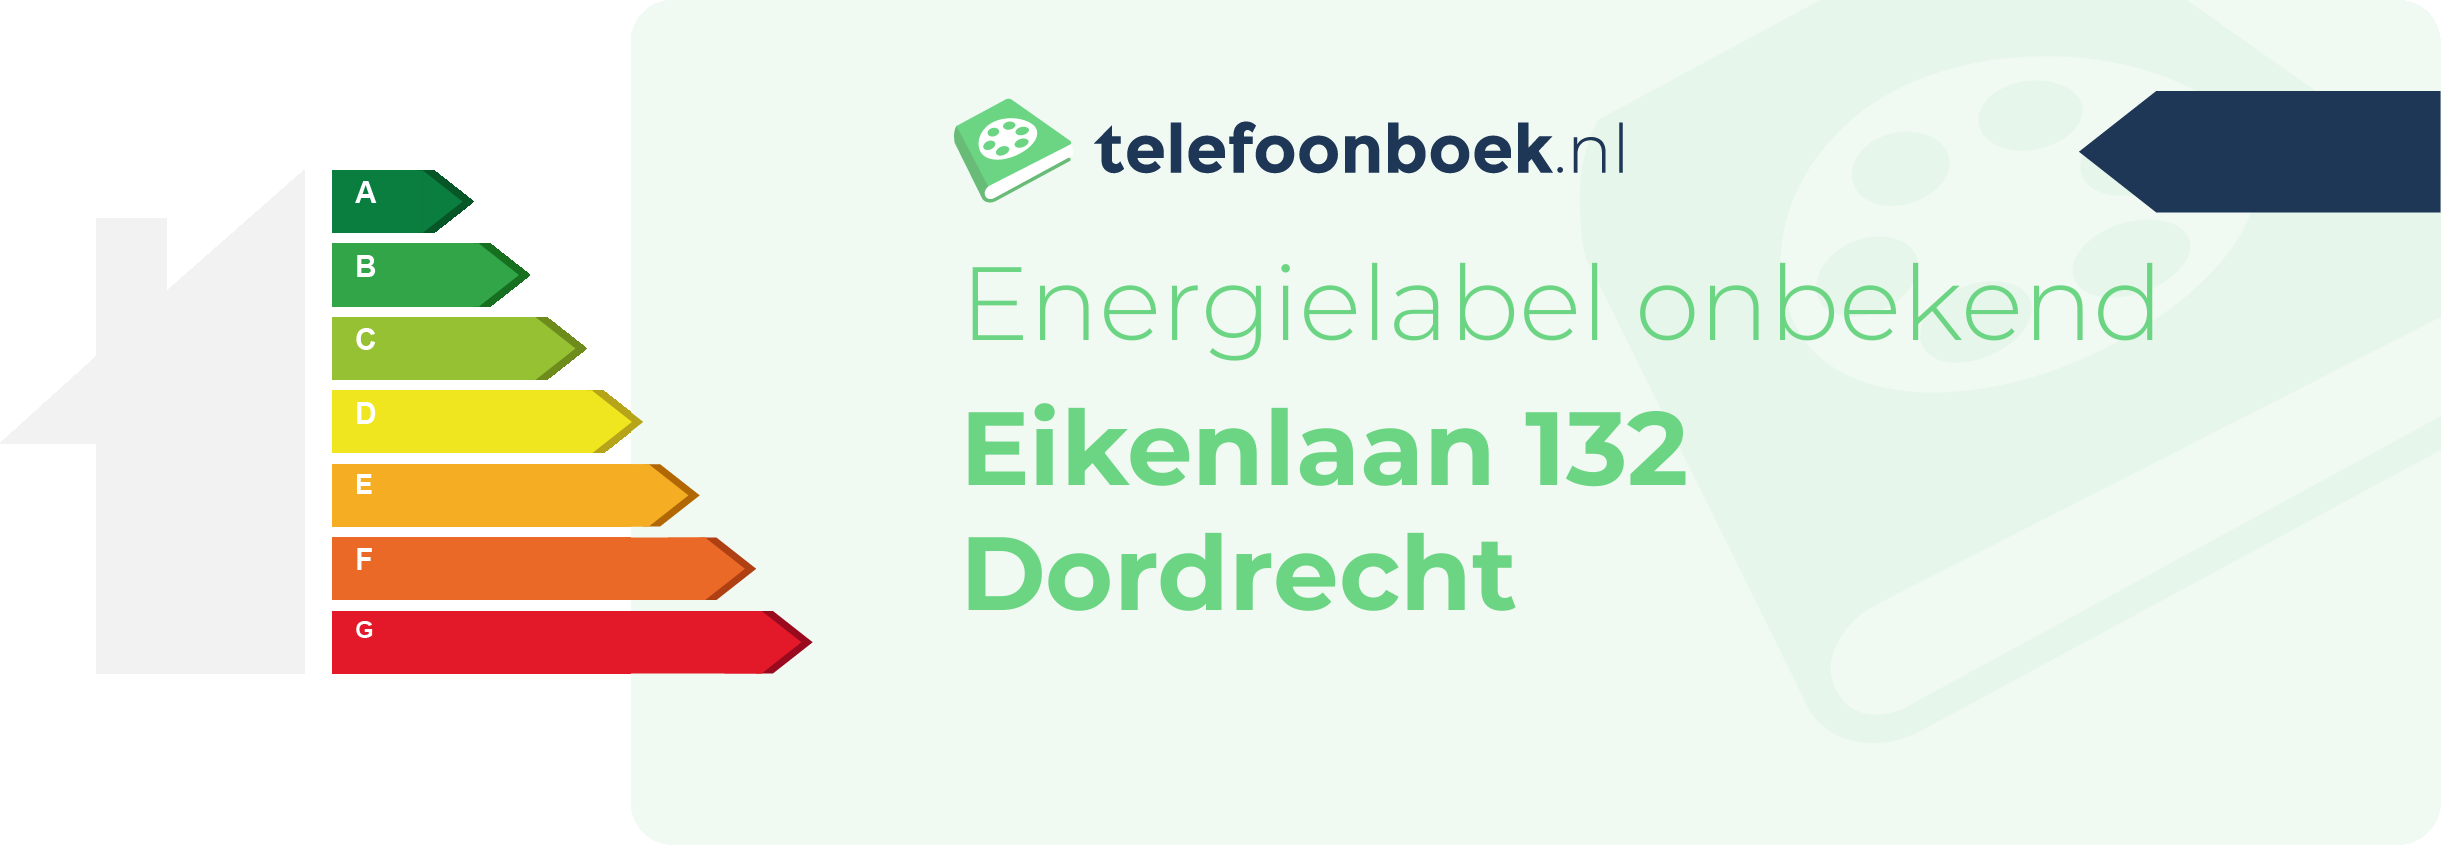 Energielabel Eikenlaan 132 Dordrecht